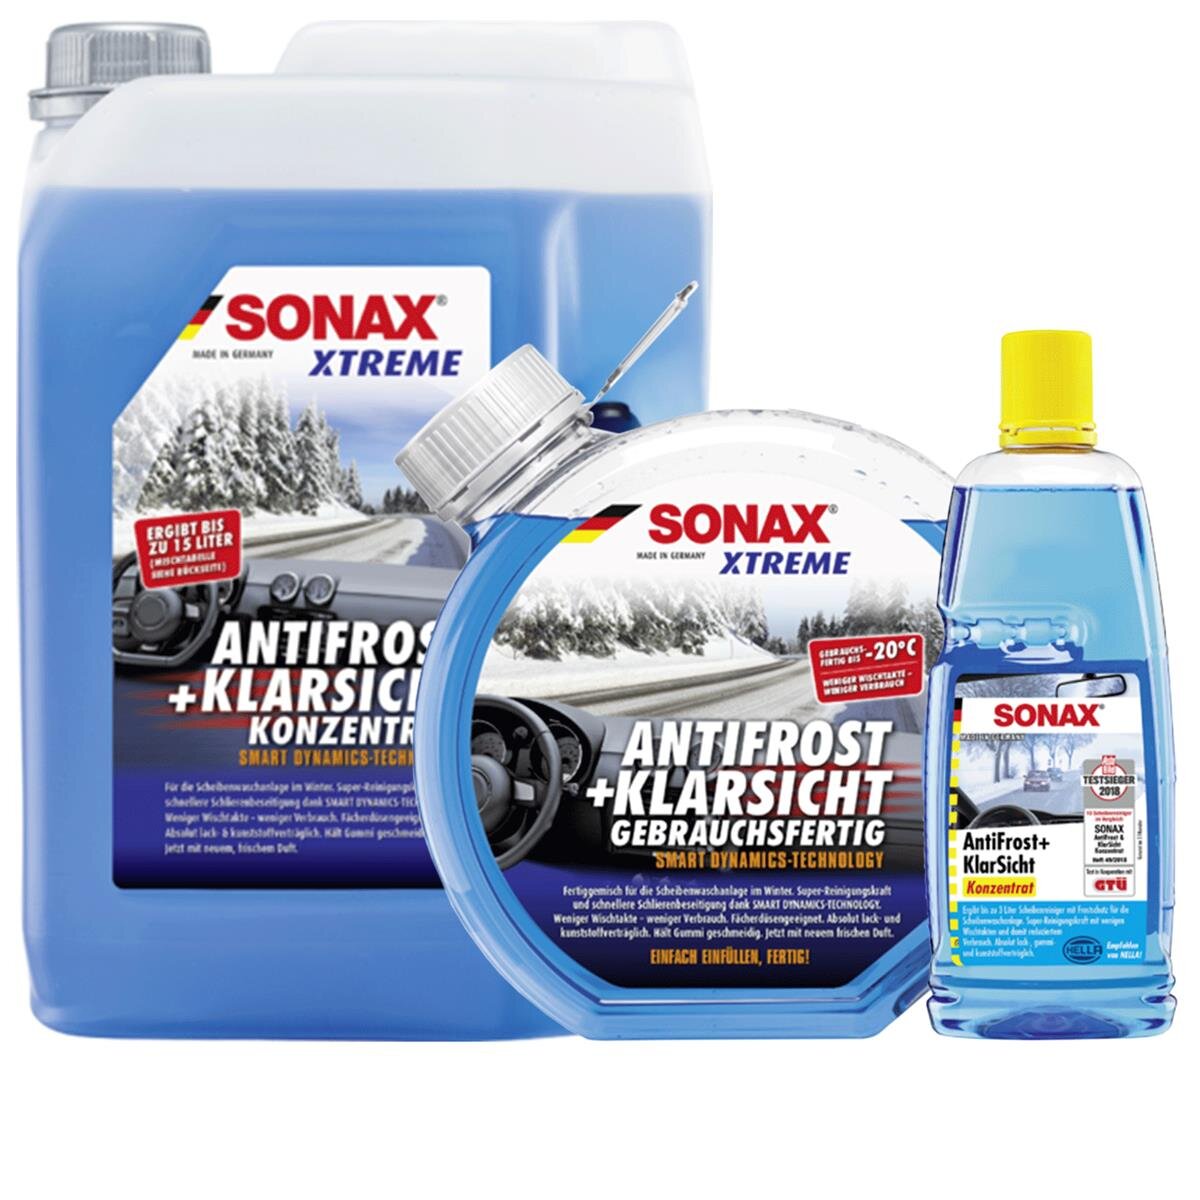 SONAX XTREME AntiFrost+KlarSicht kaufen, Theunissen GmbH